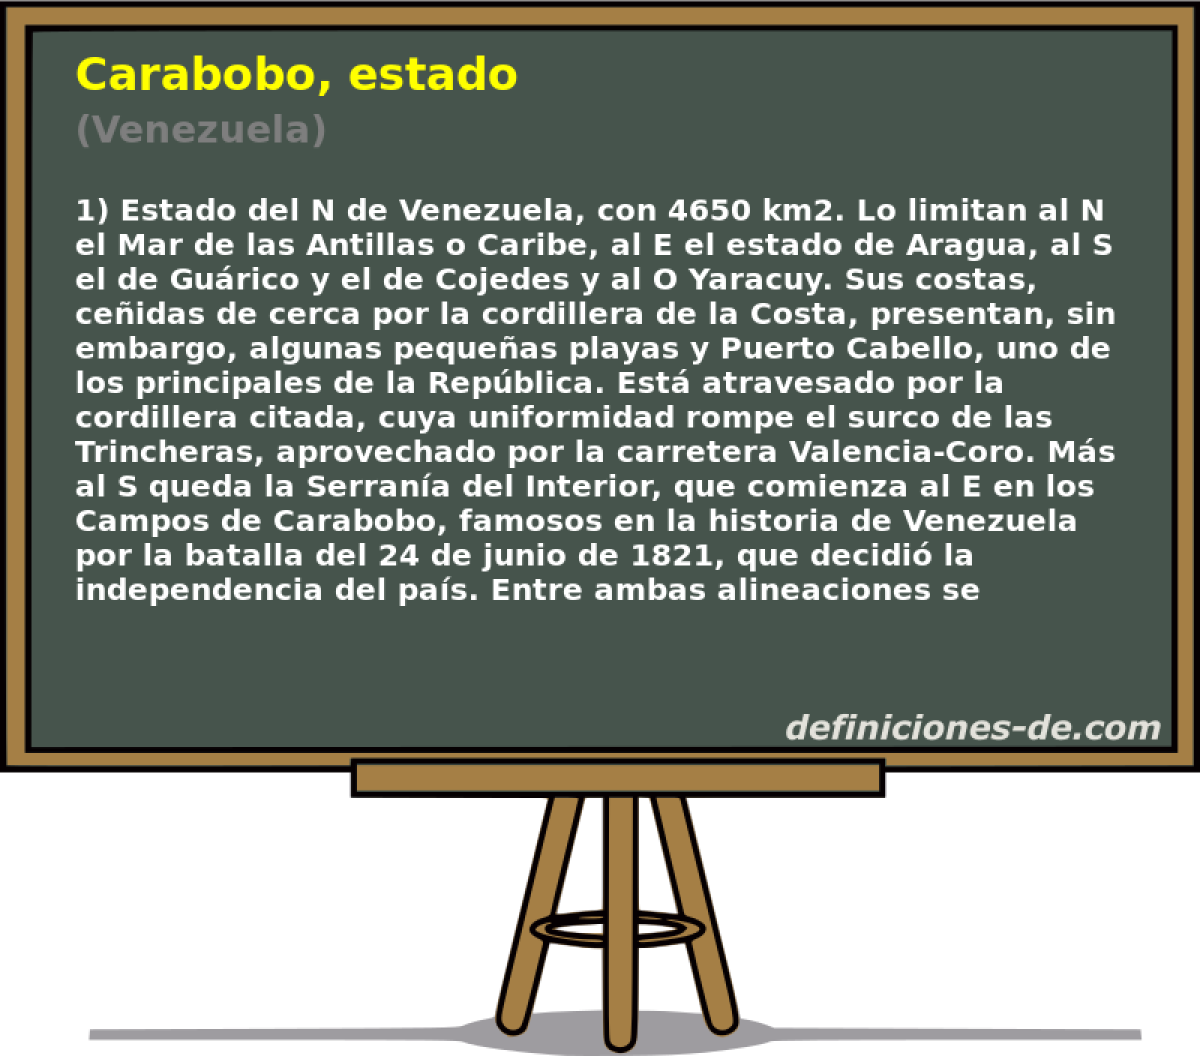 Carabobo, estado (Venezuela)